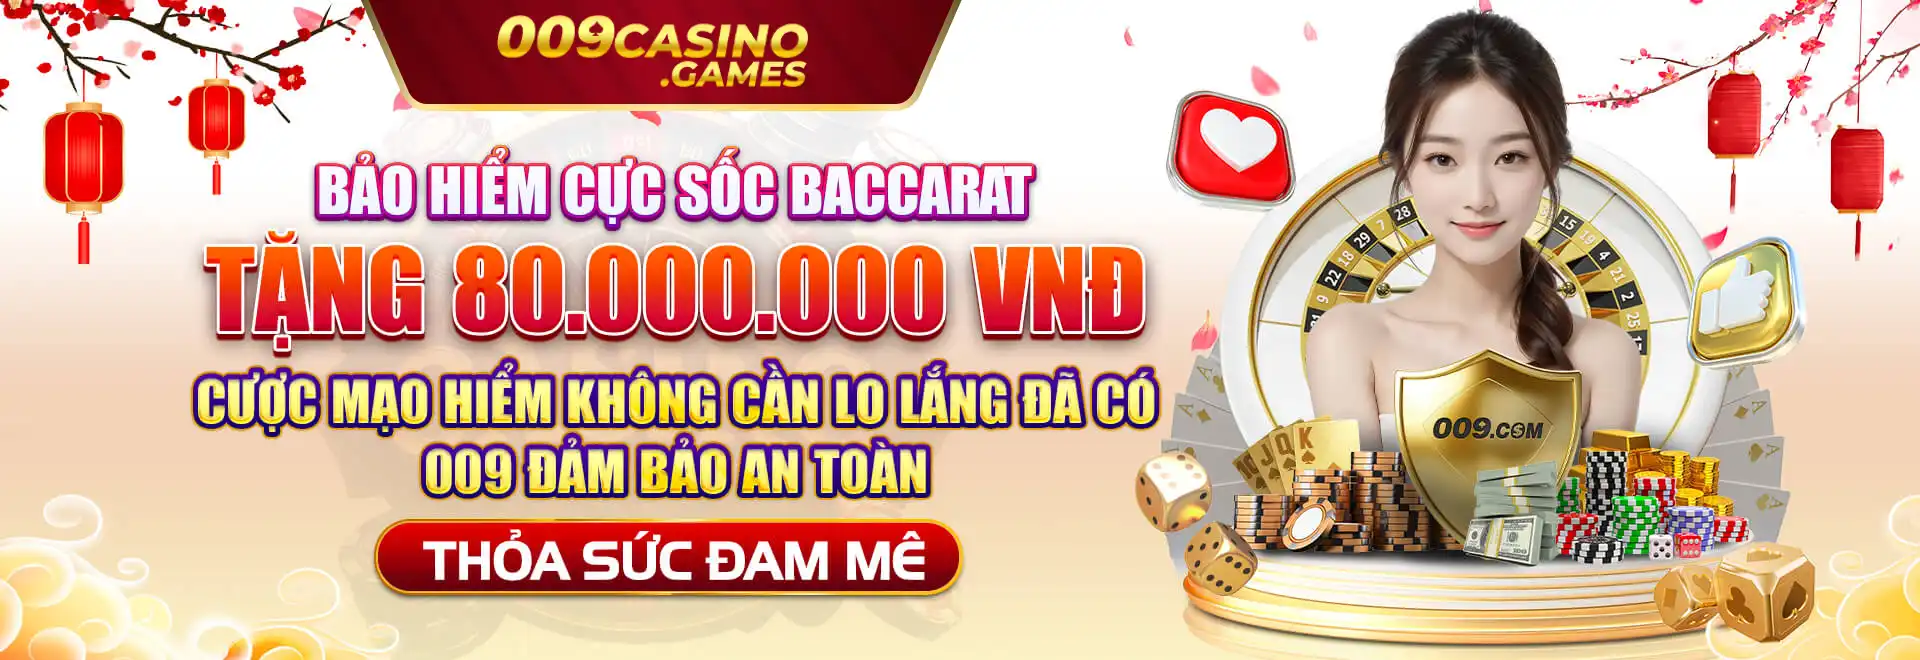 banner 009 casino 06